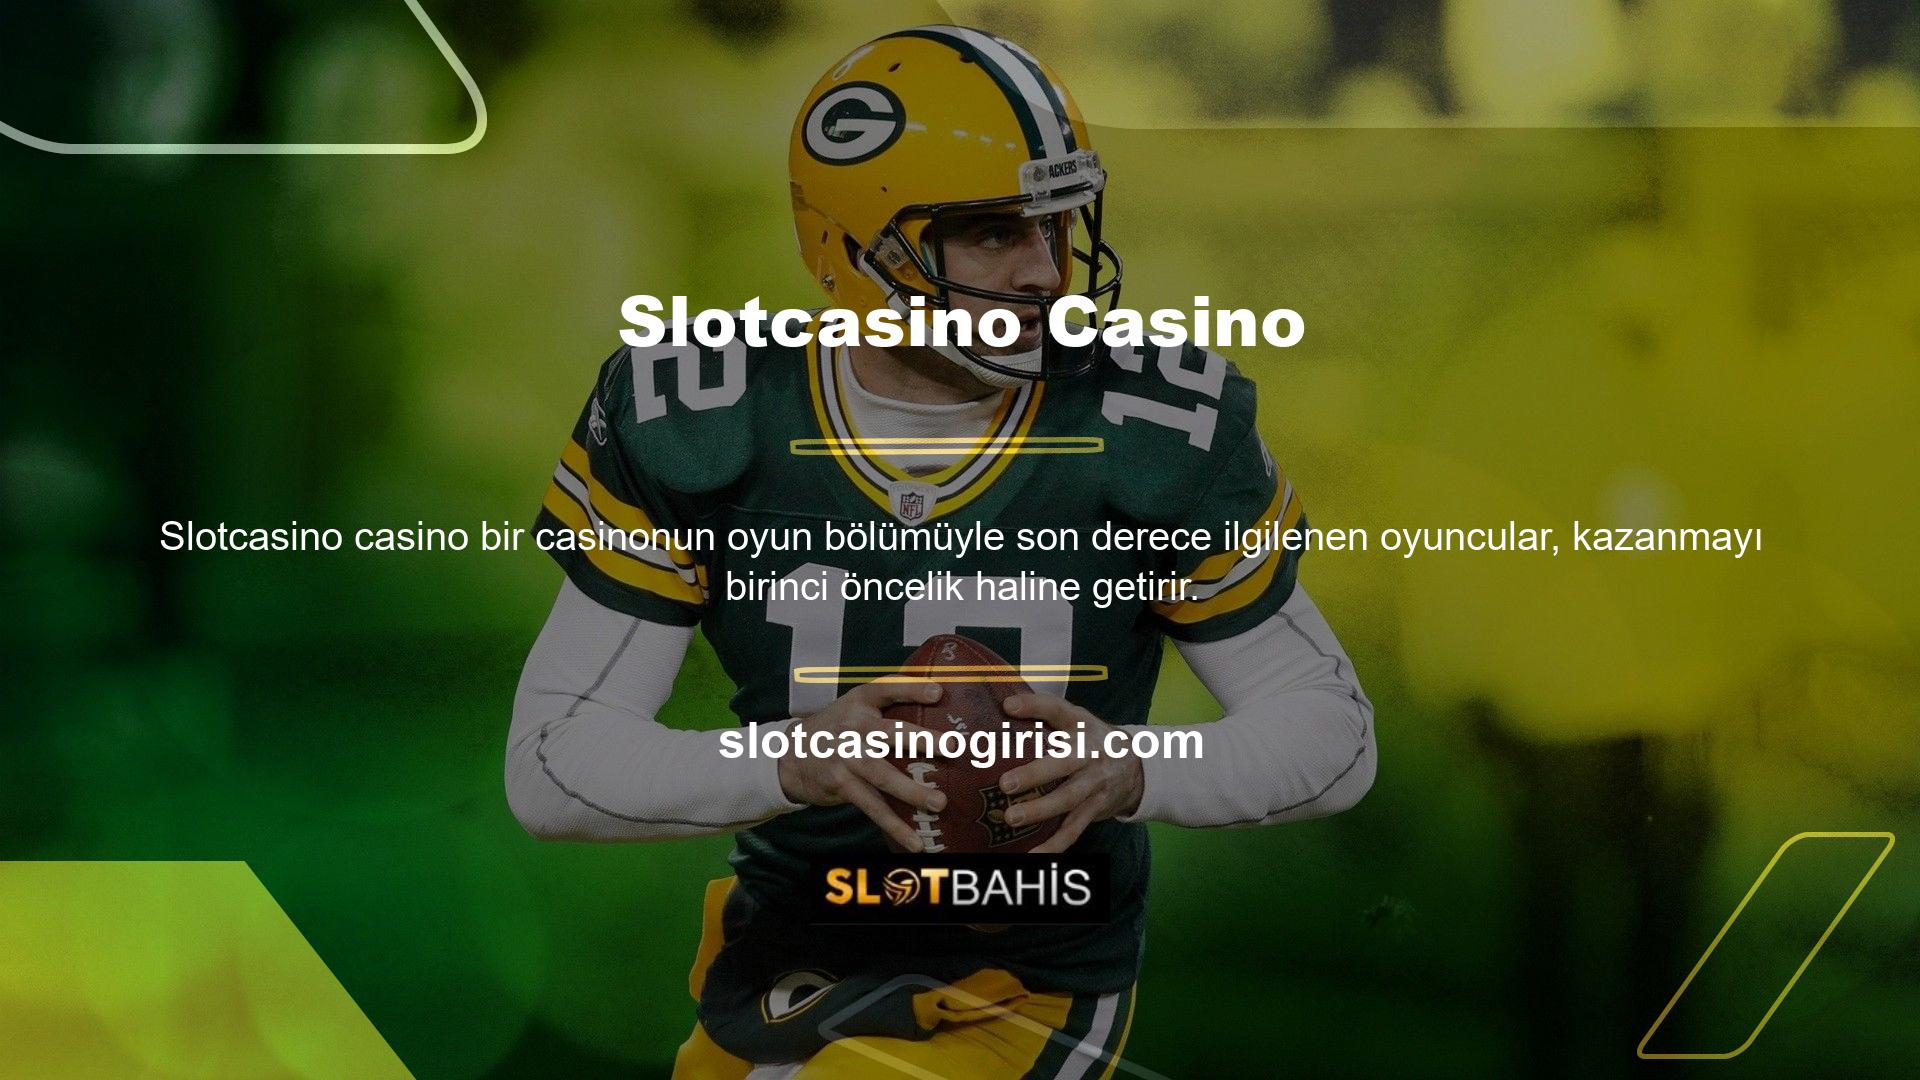 Slotcasino slot ve casino oyunlarının oyuncularını cezbetmektedir